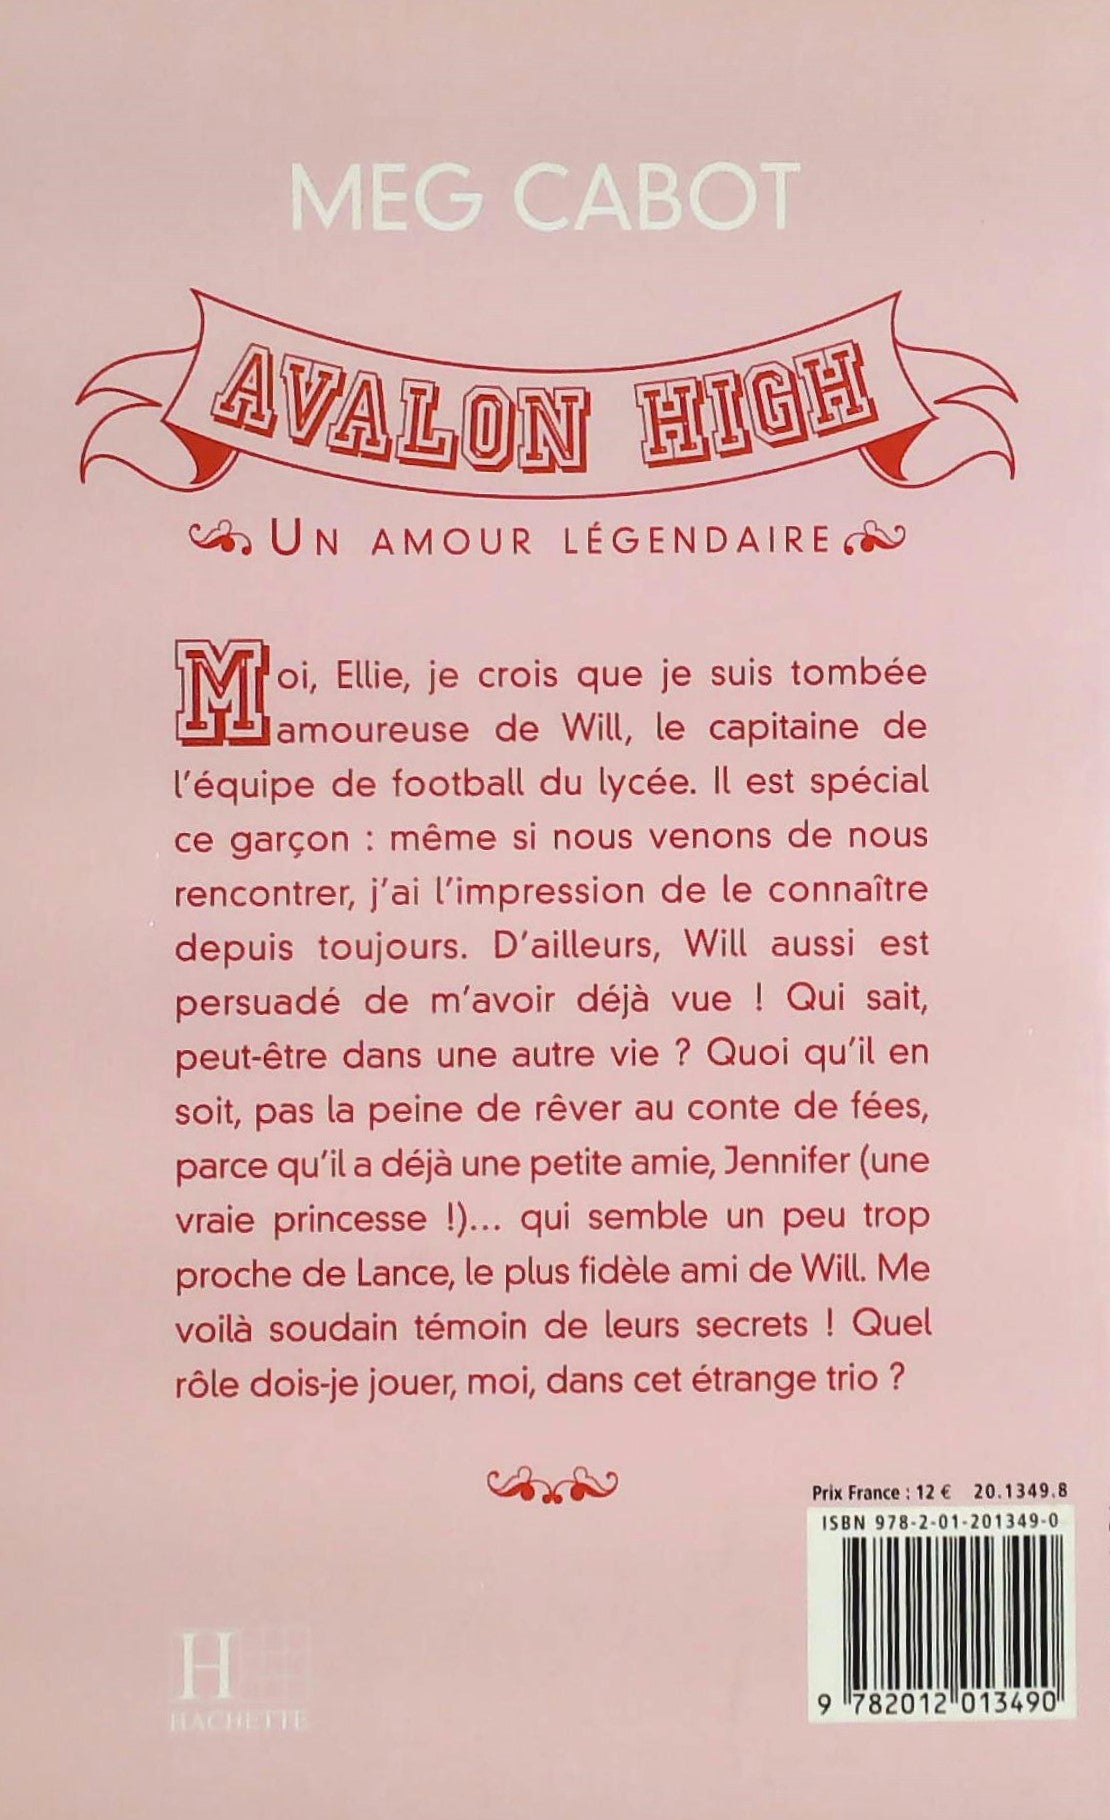 Avalon High : Un amour légendaire (Meg Cabot)